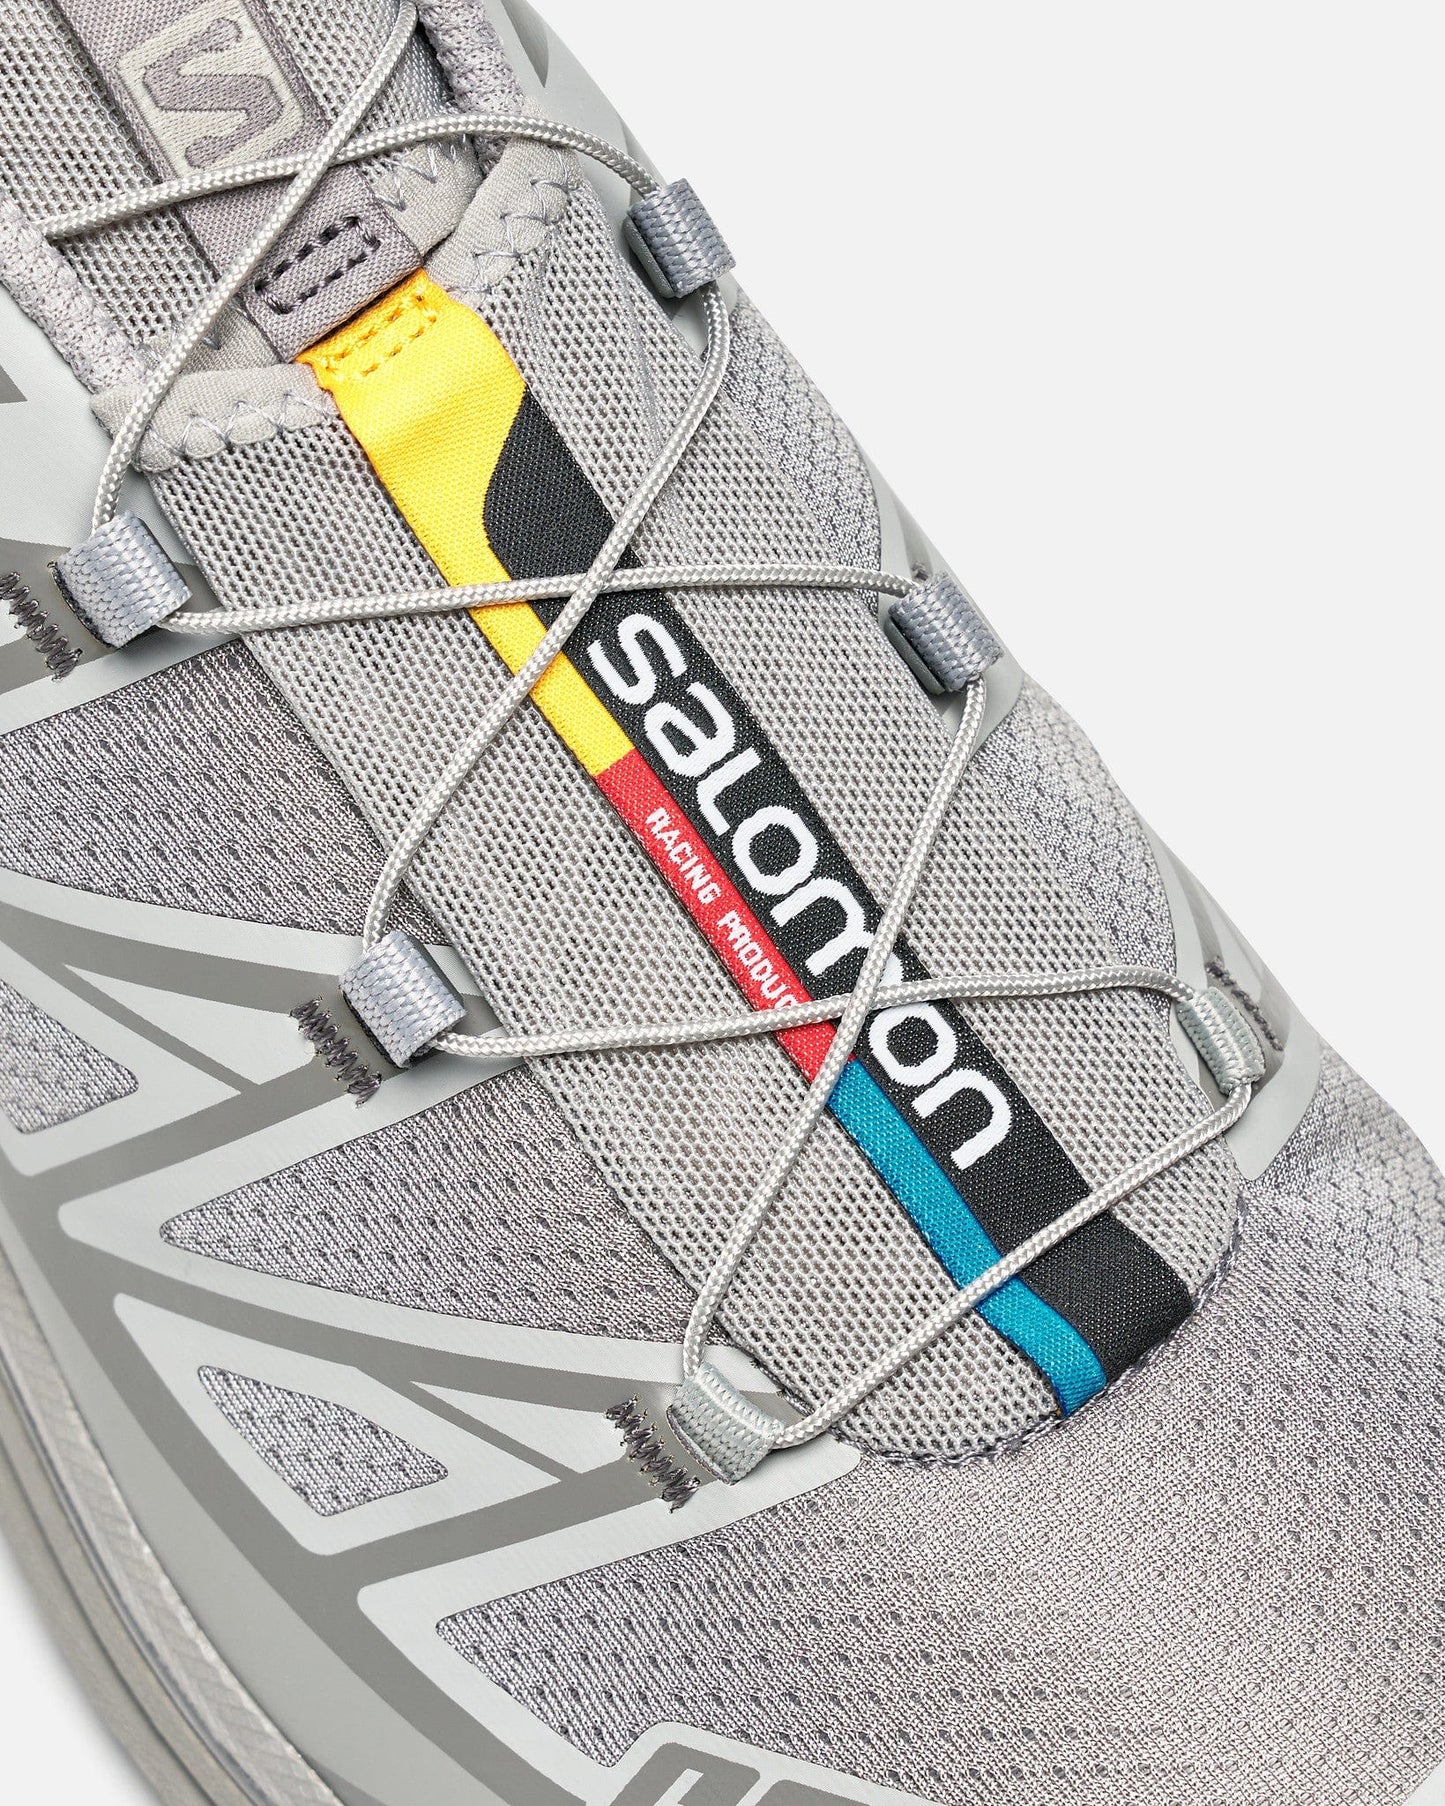 Salomon Men's Sneakers XT-6 Ghost Gray/Gray Flannel